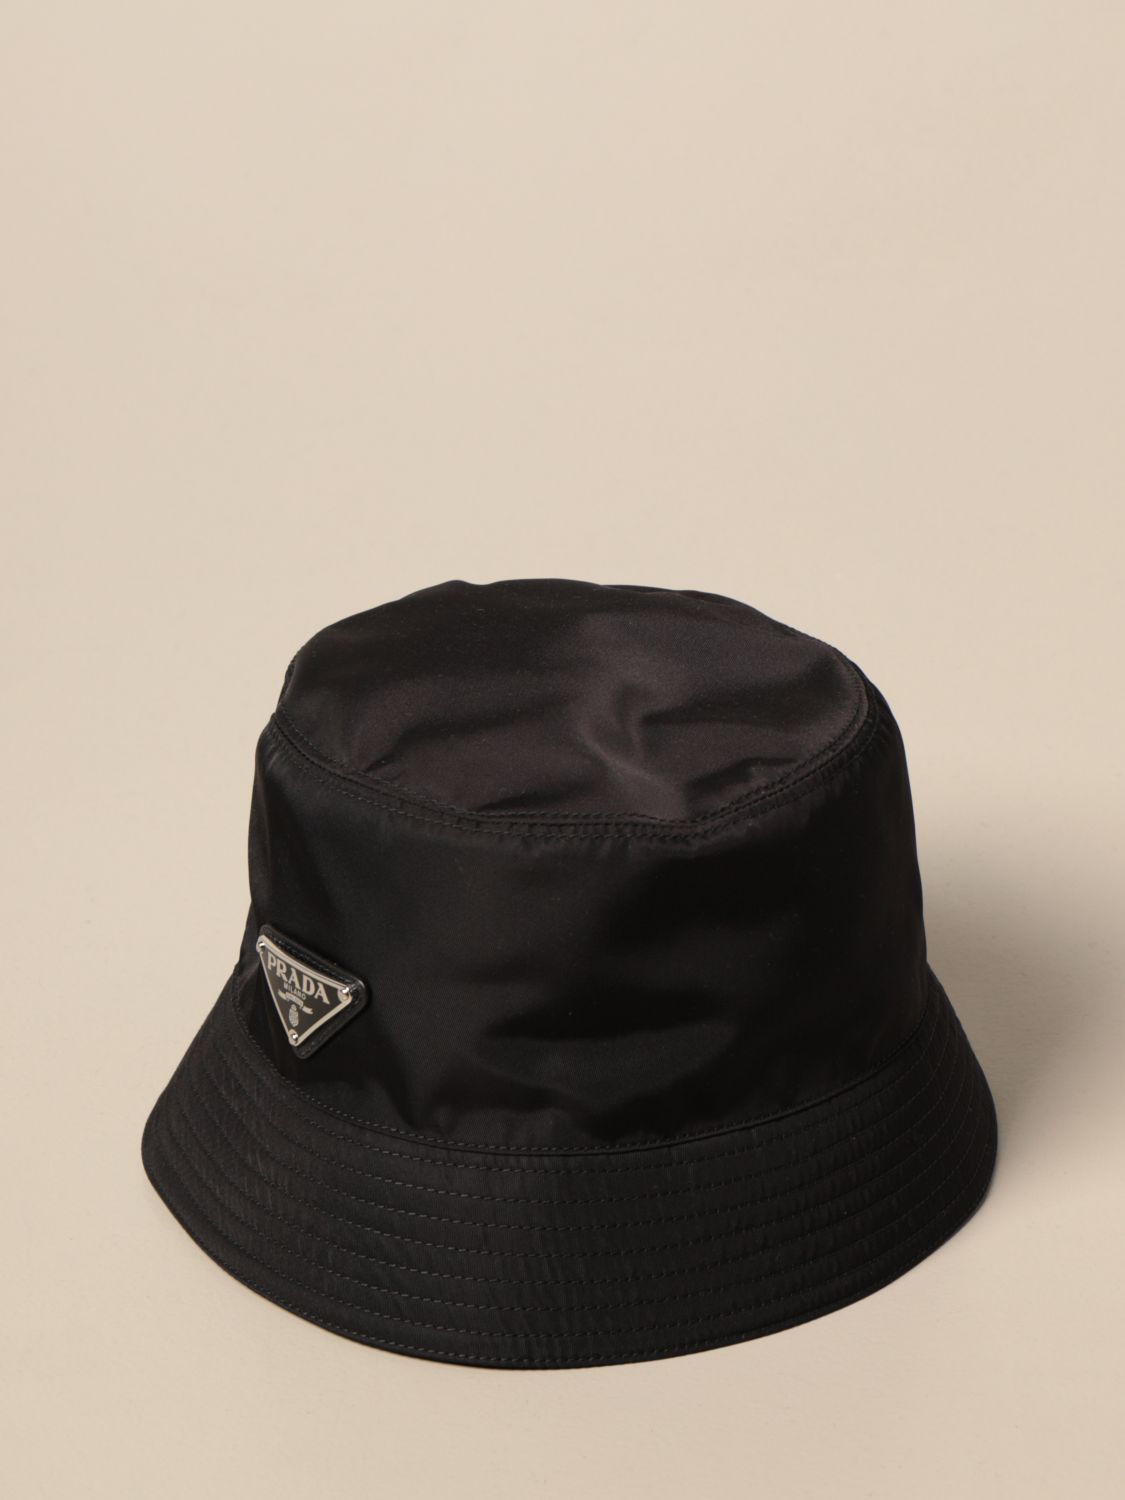 PRADA: nylon fisherman hat with logo - Black | Prada hat 1HC137 2B15 online  on 